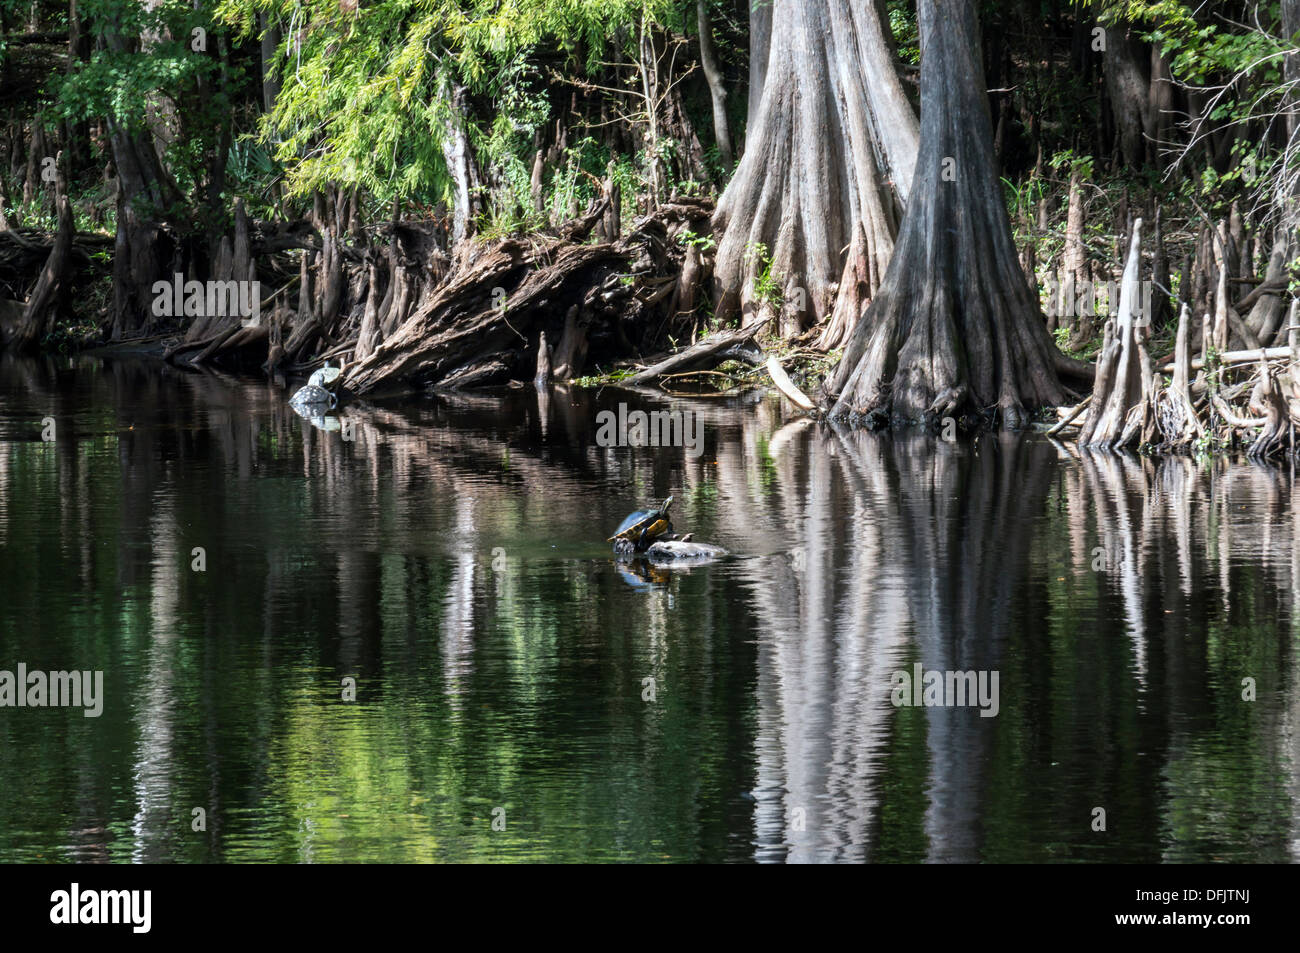 Llanura Costera cooter (Pseudemys concinna floridana), Florida Cooter es una especie de grandes herbívoros en registro de tortugas de agua dulce. Foto de stock